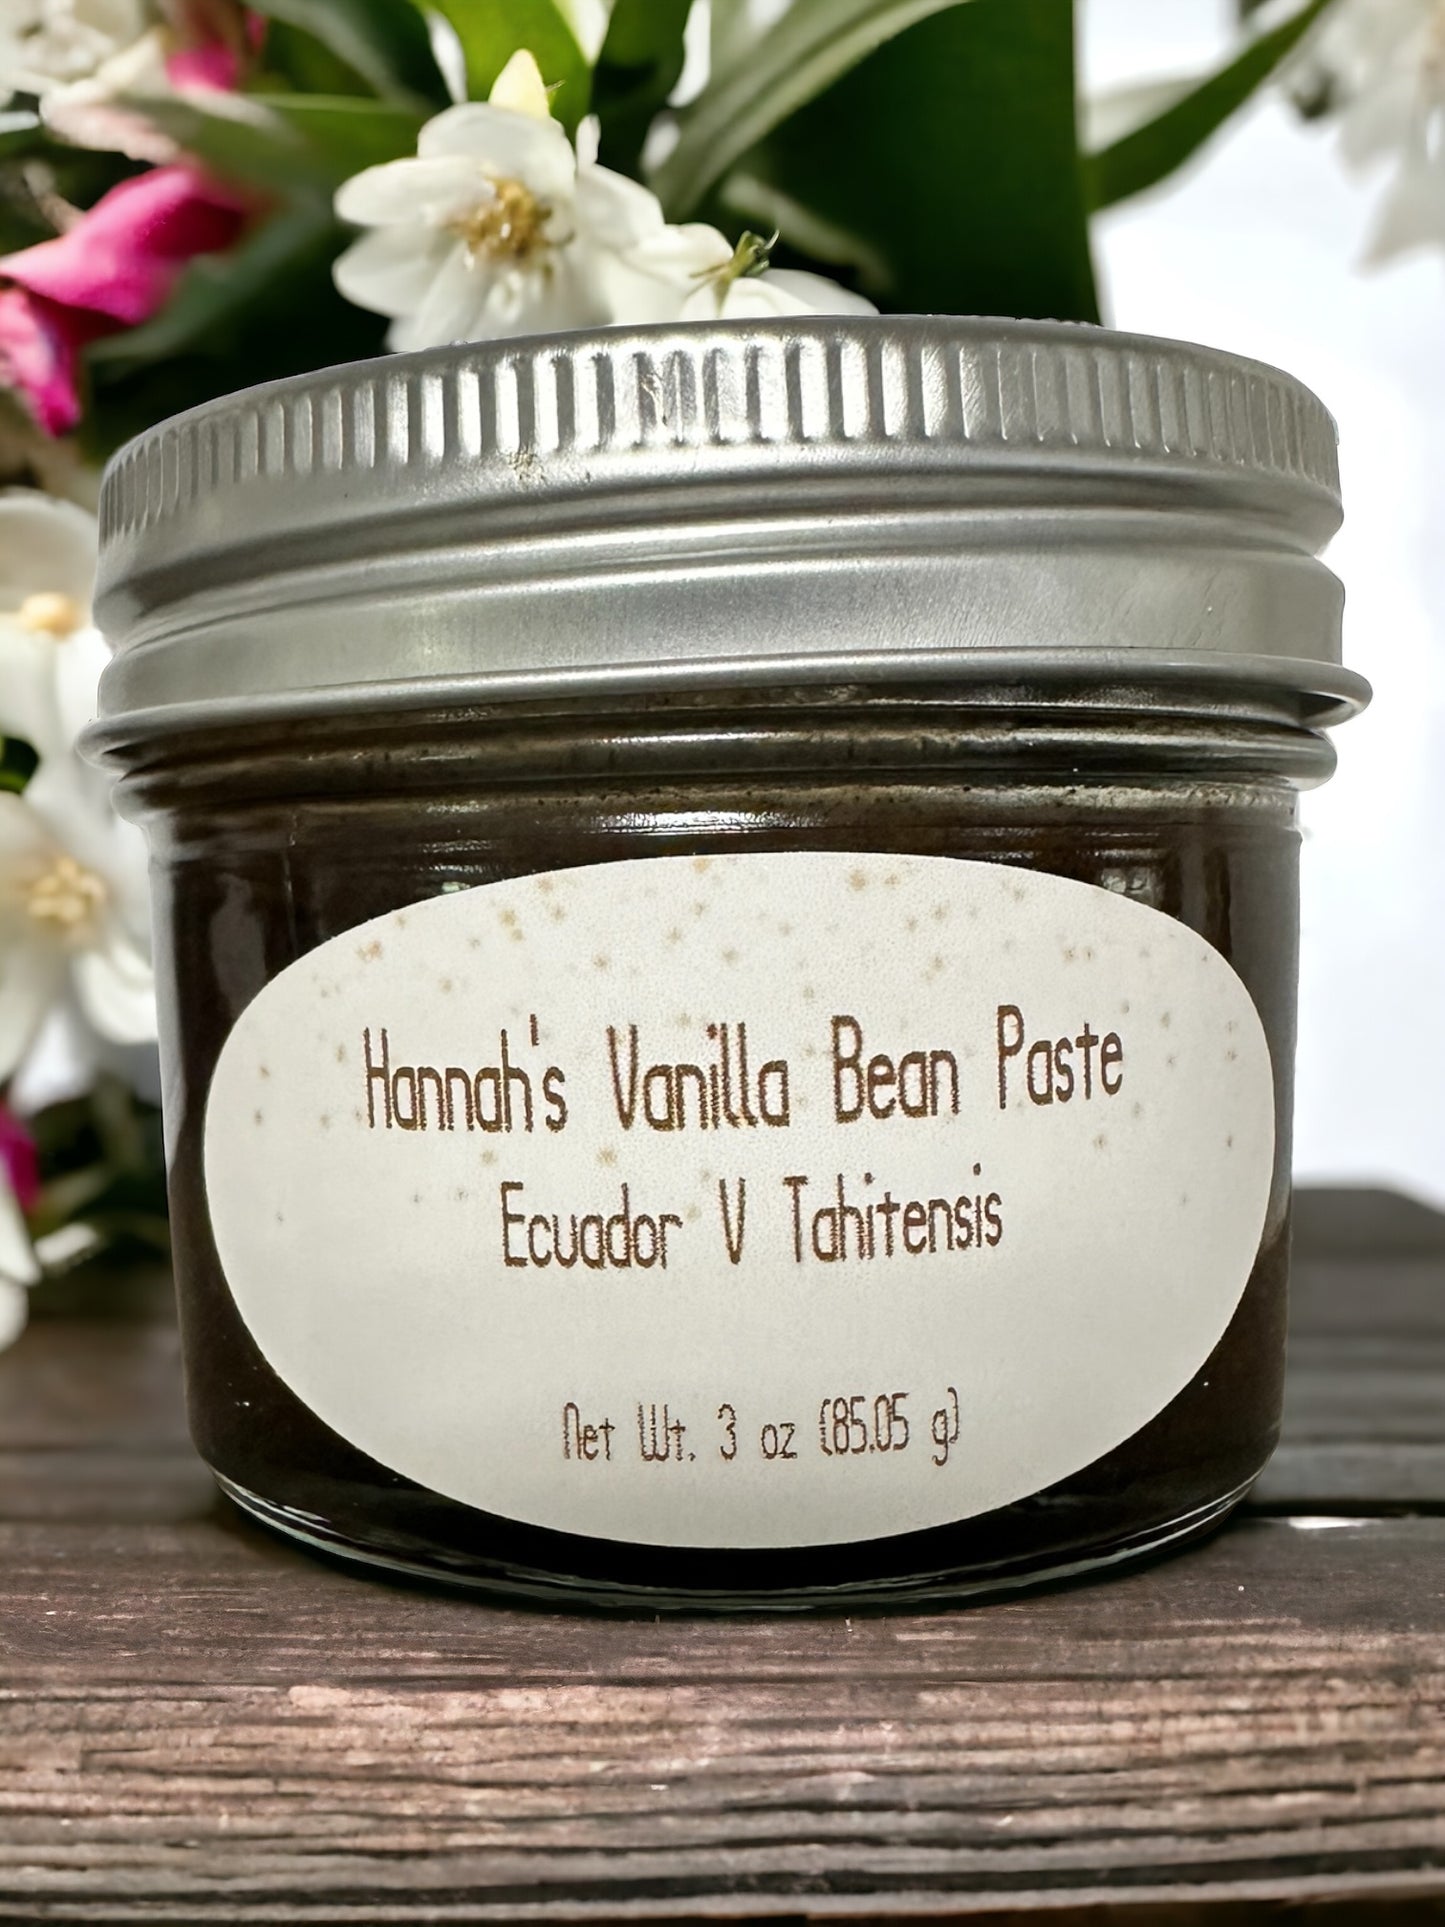 Hannah’s Vanilla Bean Paste